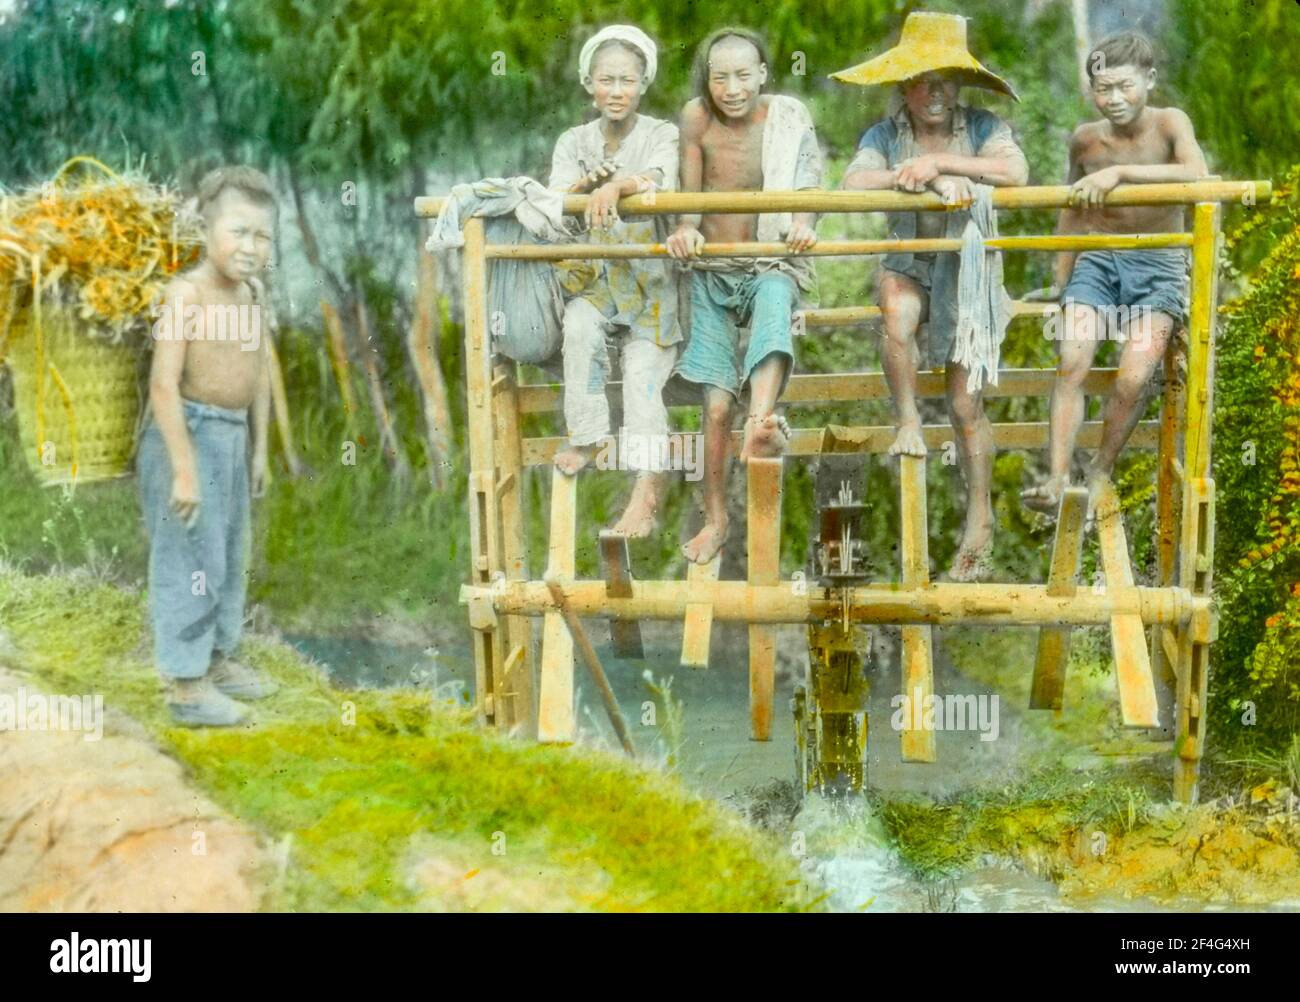 Mehrere Jungen Pumpen mit ihren Füßen Wasser durch ein Holzrad, ein zweiter Junge trägt einen schwer beladenen Korb und steht am Flussufer, Sichuan, China, 1917. Aus der Sammlung Sidney D. Gamble Photographs. () Stockfoto